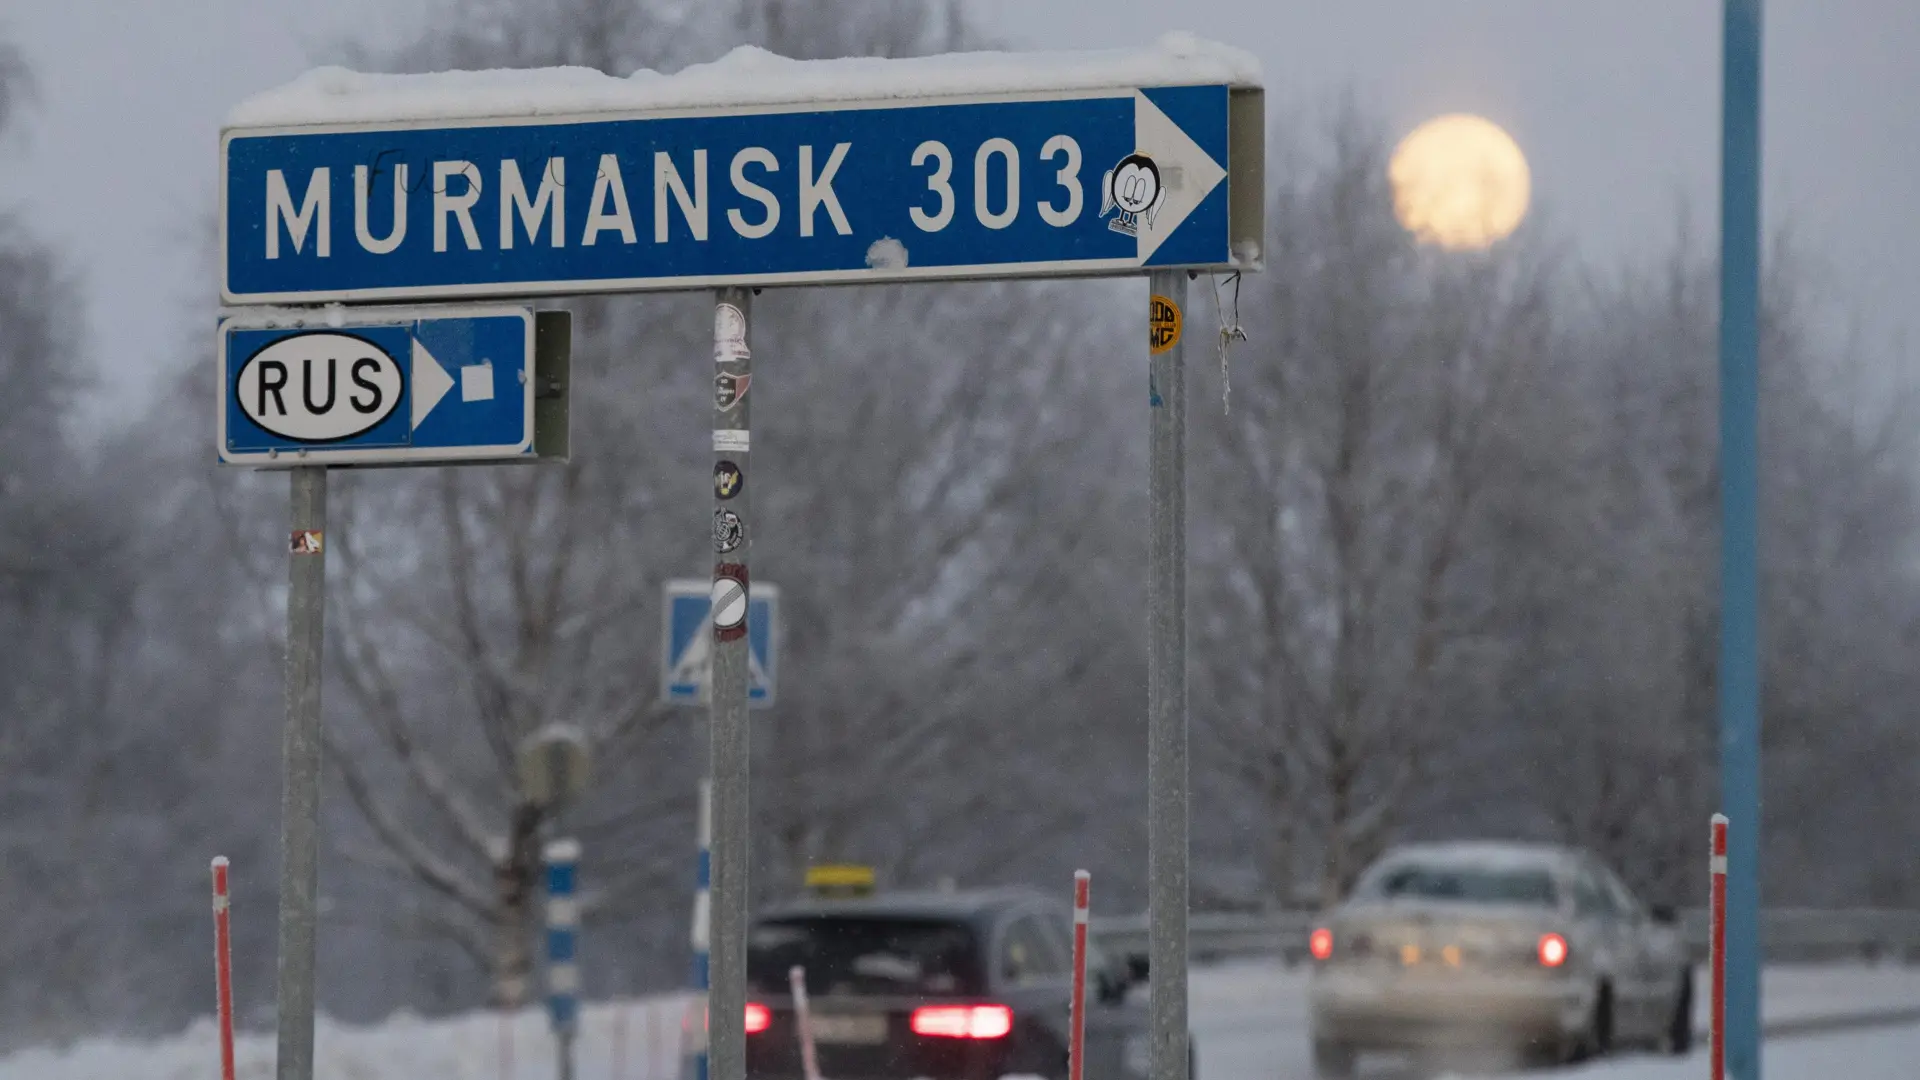 Caos en Suecia, Finlandia y Dinamarca por nieve y frío extremo de hasta 43  grados bajo cero